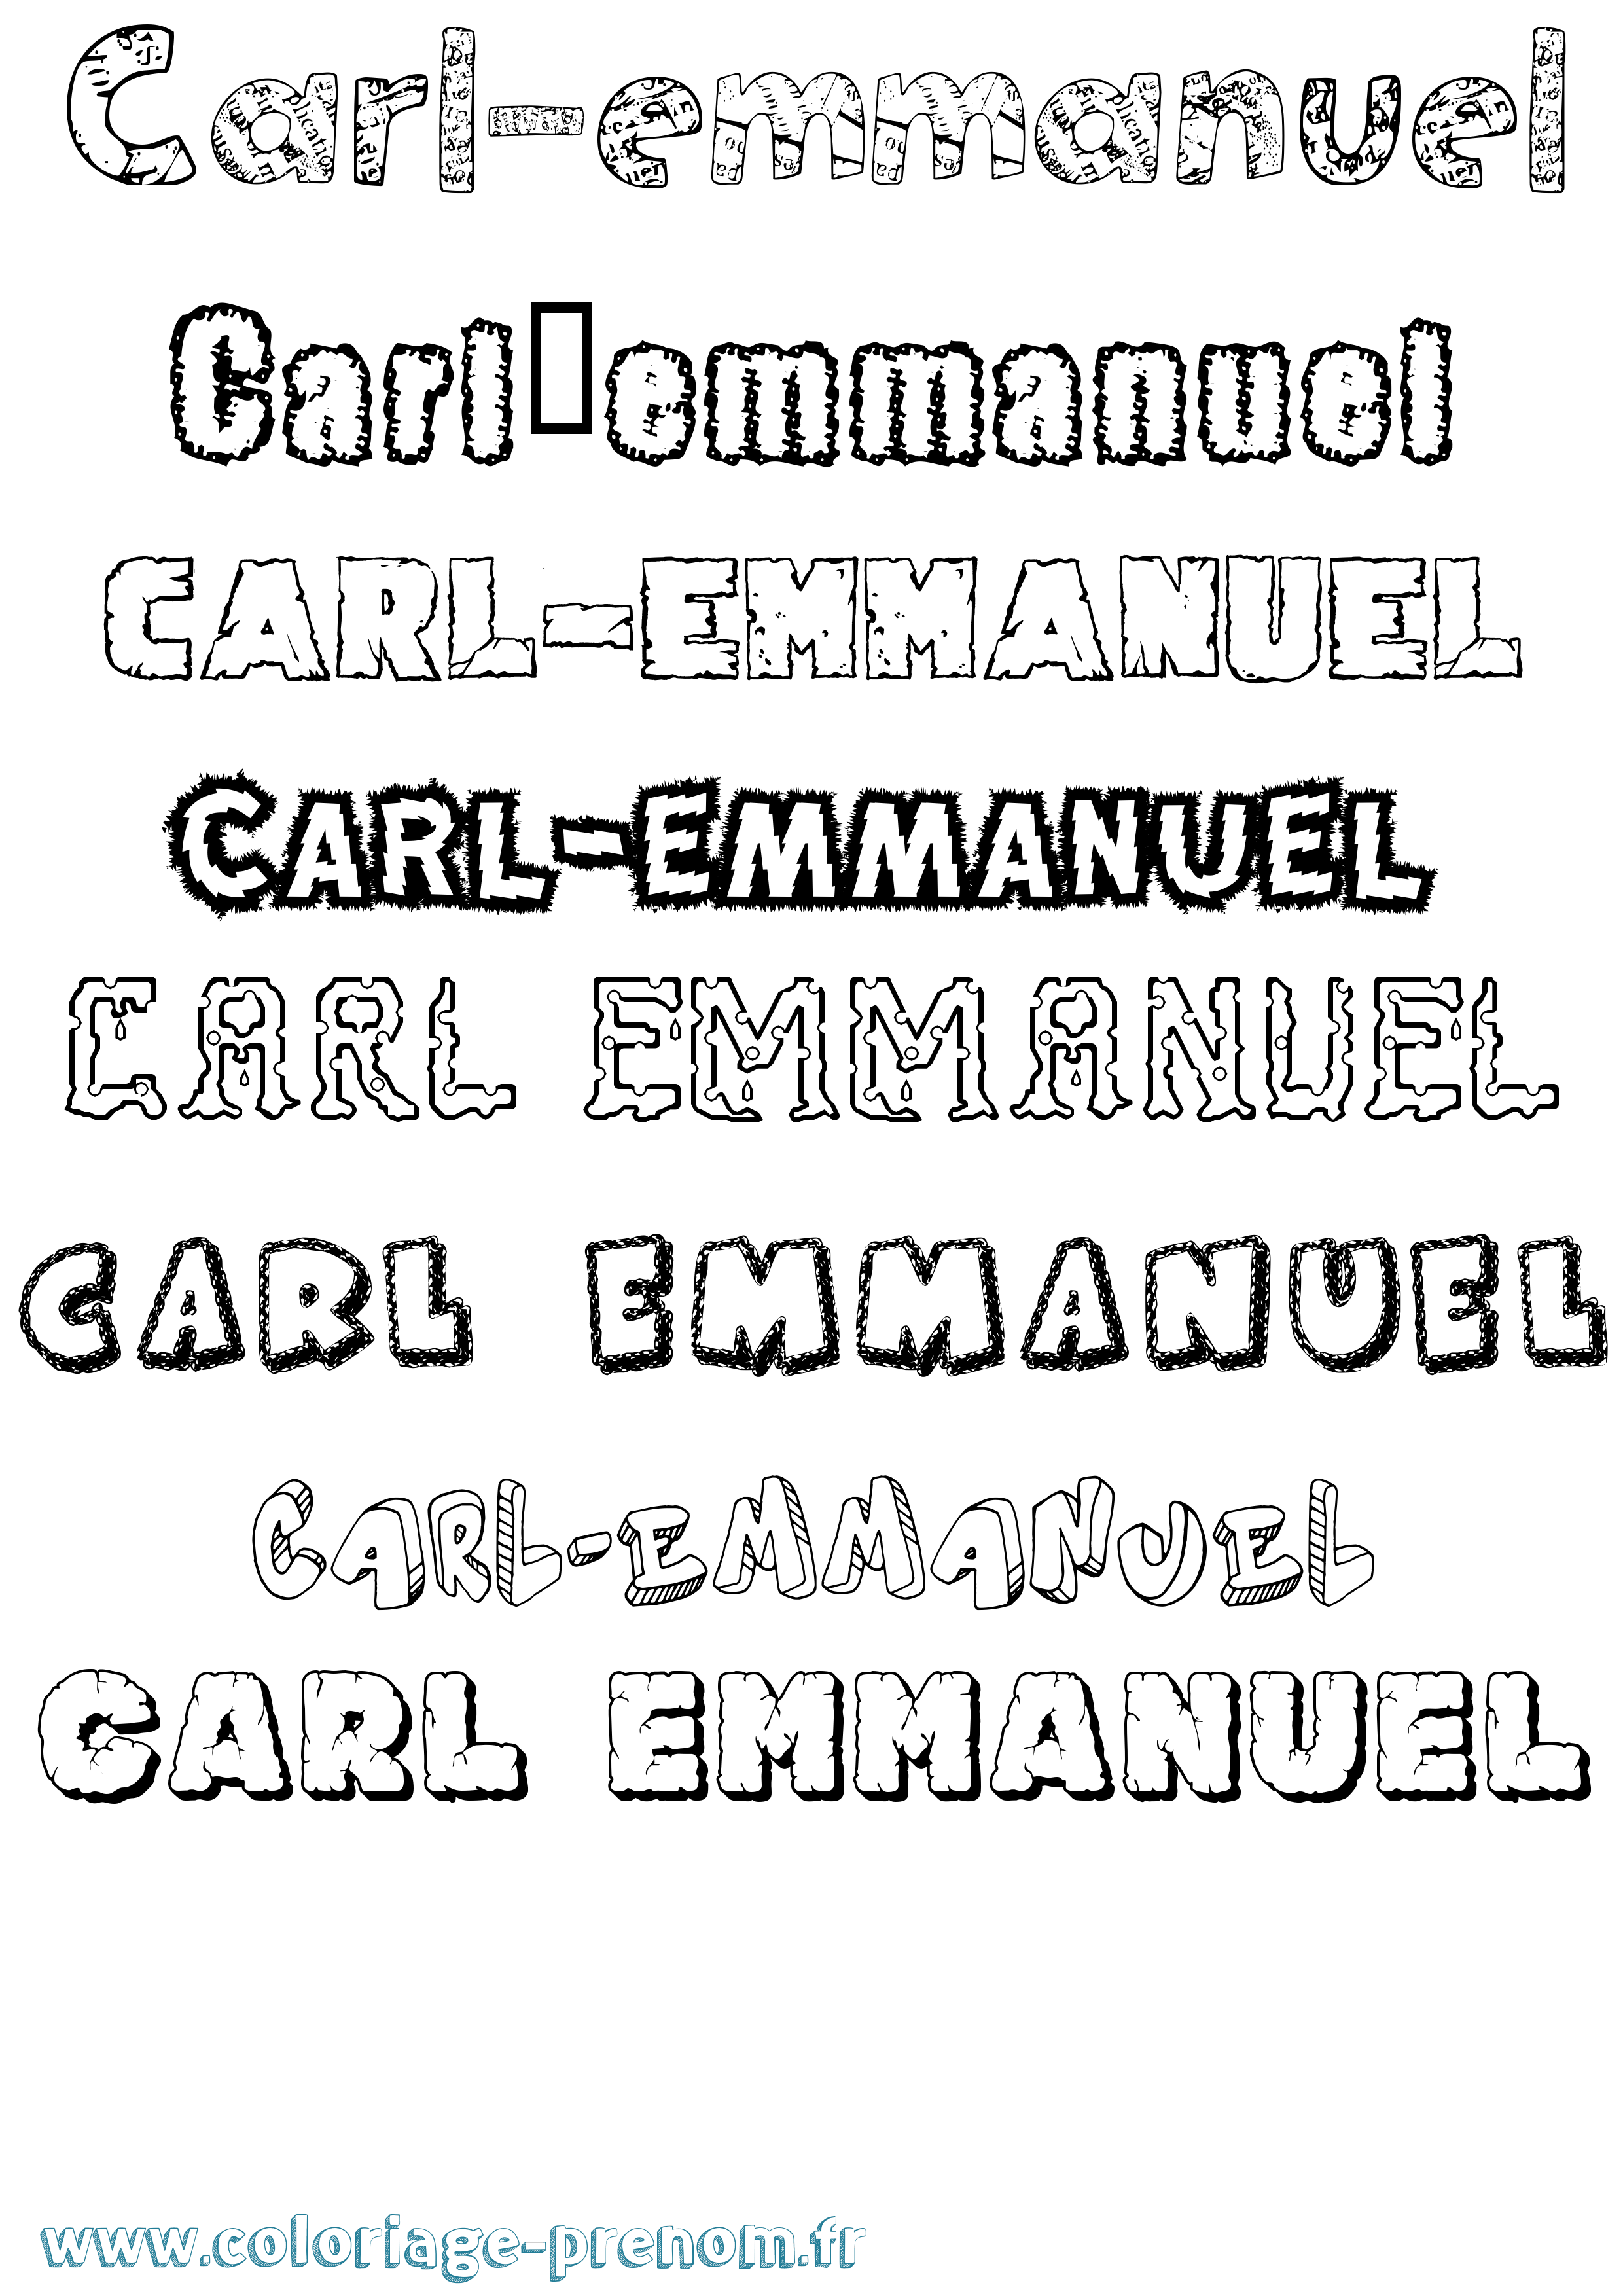 Coloriage prénom Carl-Emmanuel Destructuré